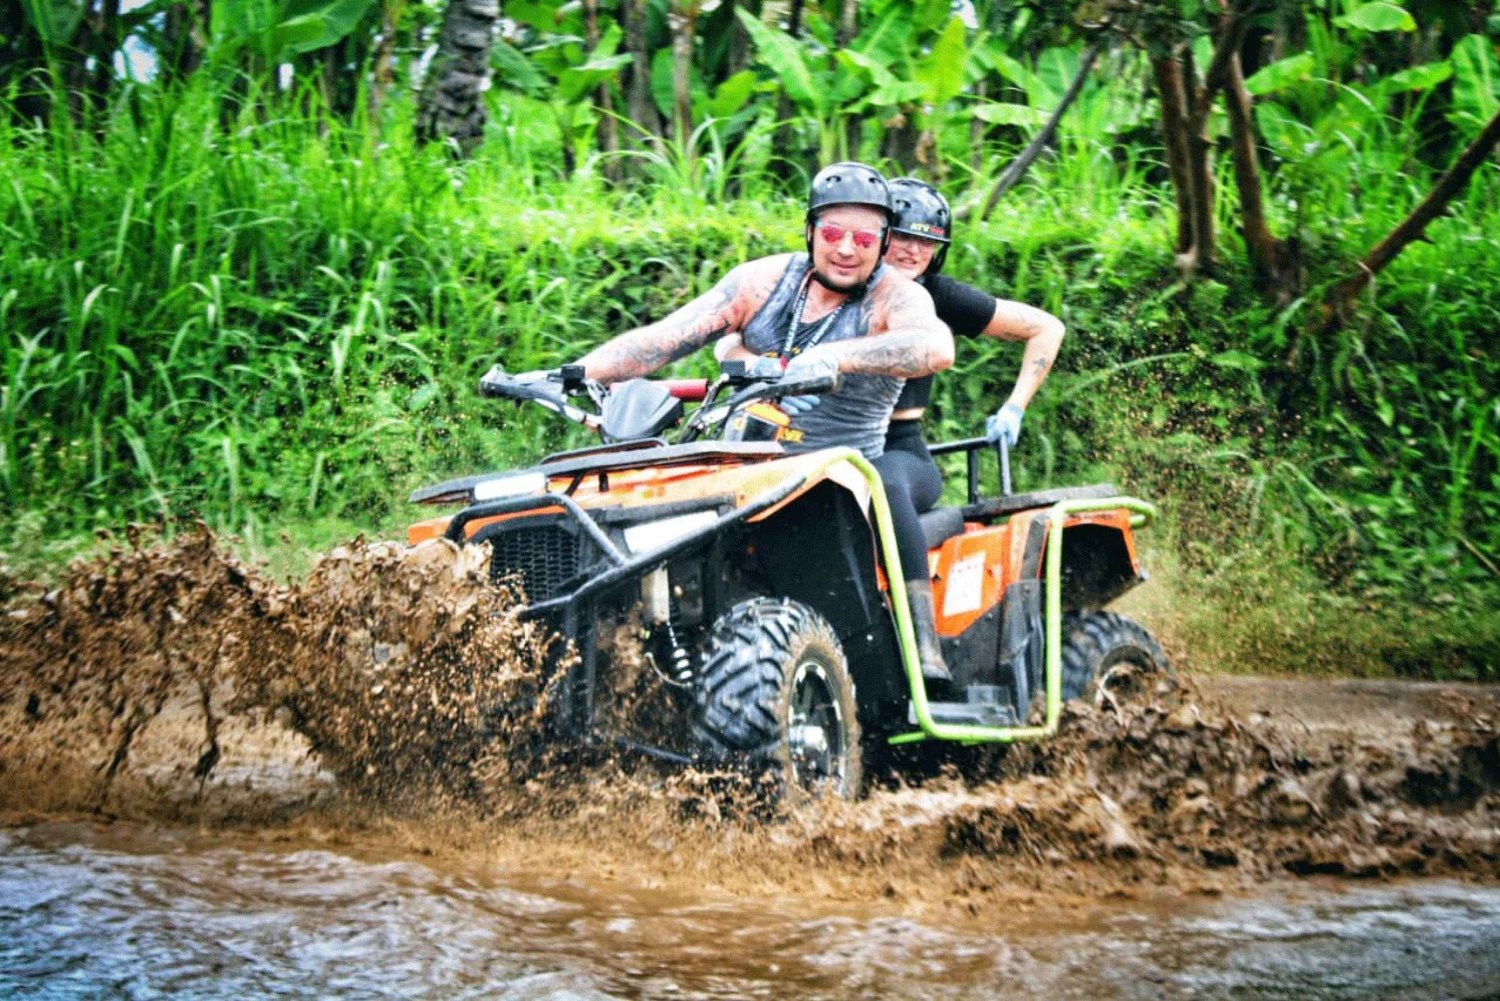 Ubud ; Jungle, rivière, forêt de bambous et circuits boueux en quad